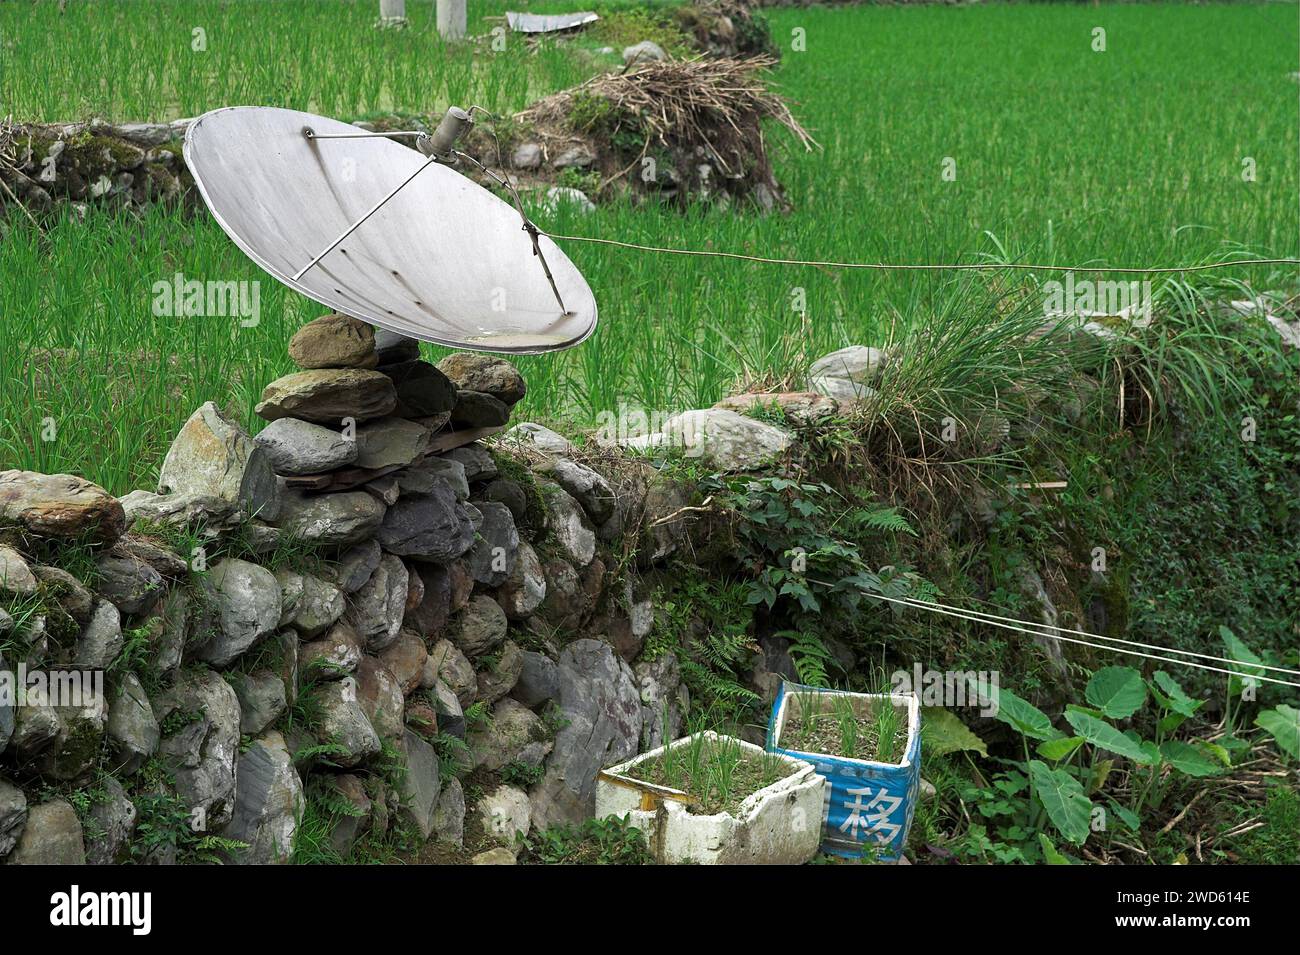 龙胜镇 (龙胜县?) 中國 Longsheng, Dazhai Longji Ping'an Zhuang, Chine ; Une antenne parabolique temporairement installée ; Parabolantenne vorübergehend installiert Banque D'Images